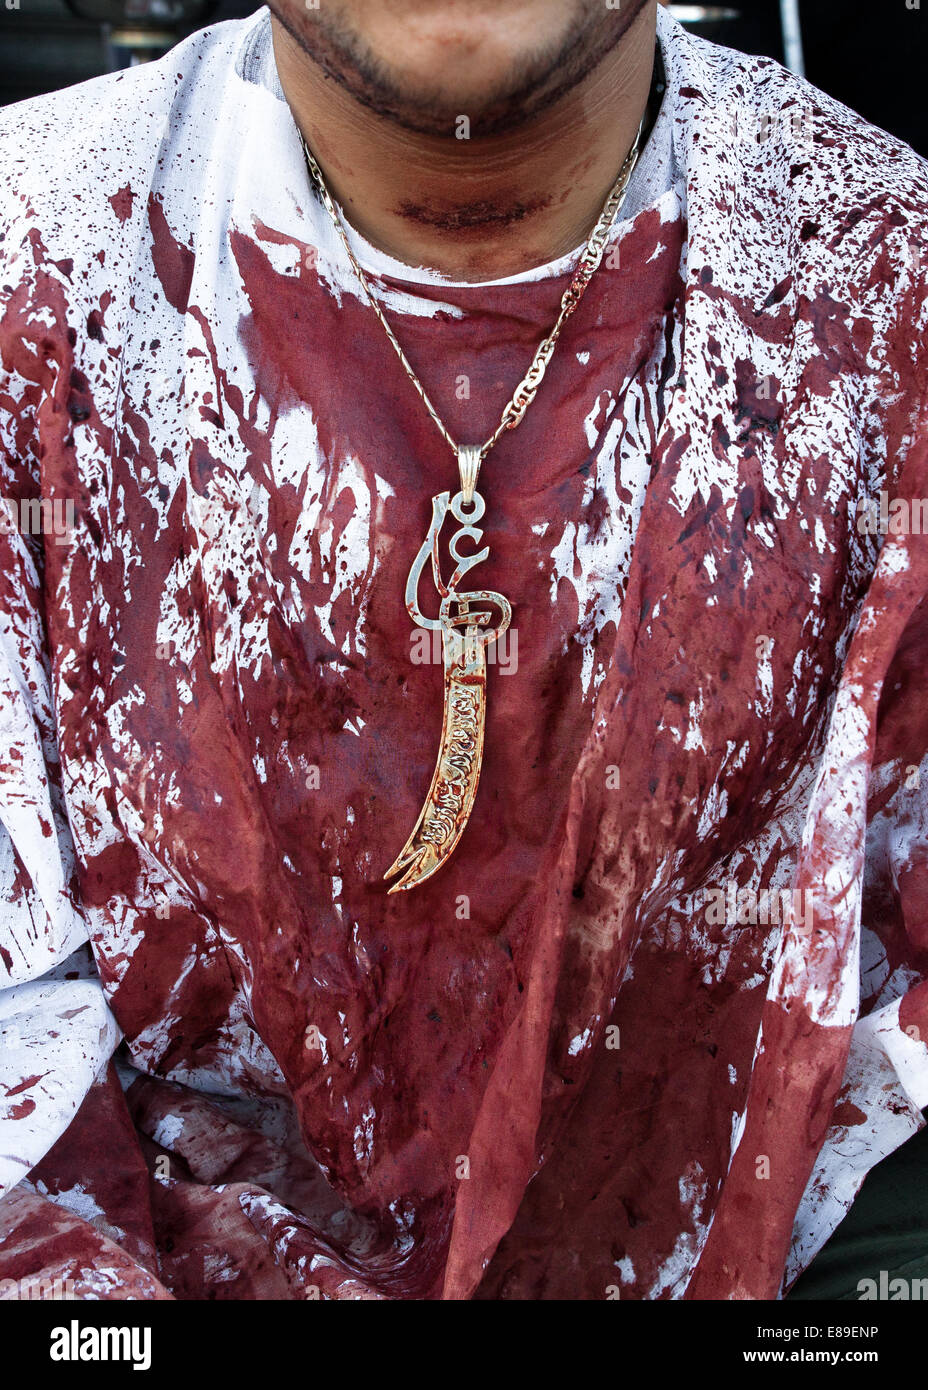 Un musulman chiite, couvert de sang, porte un pendentif de Zulfiqar, l'épée de l'Imam Ali, le jour de Achoura, Nabatieh, Liban. Banque D'Images